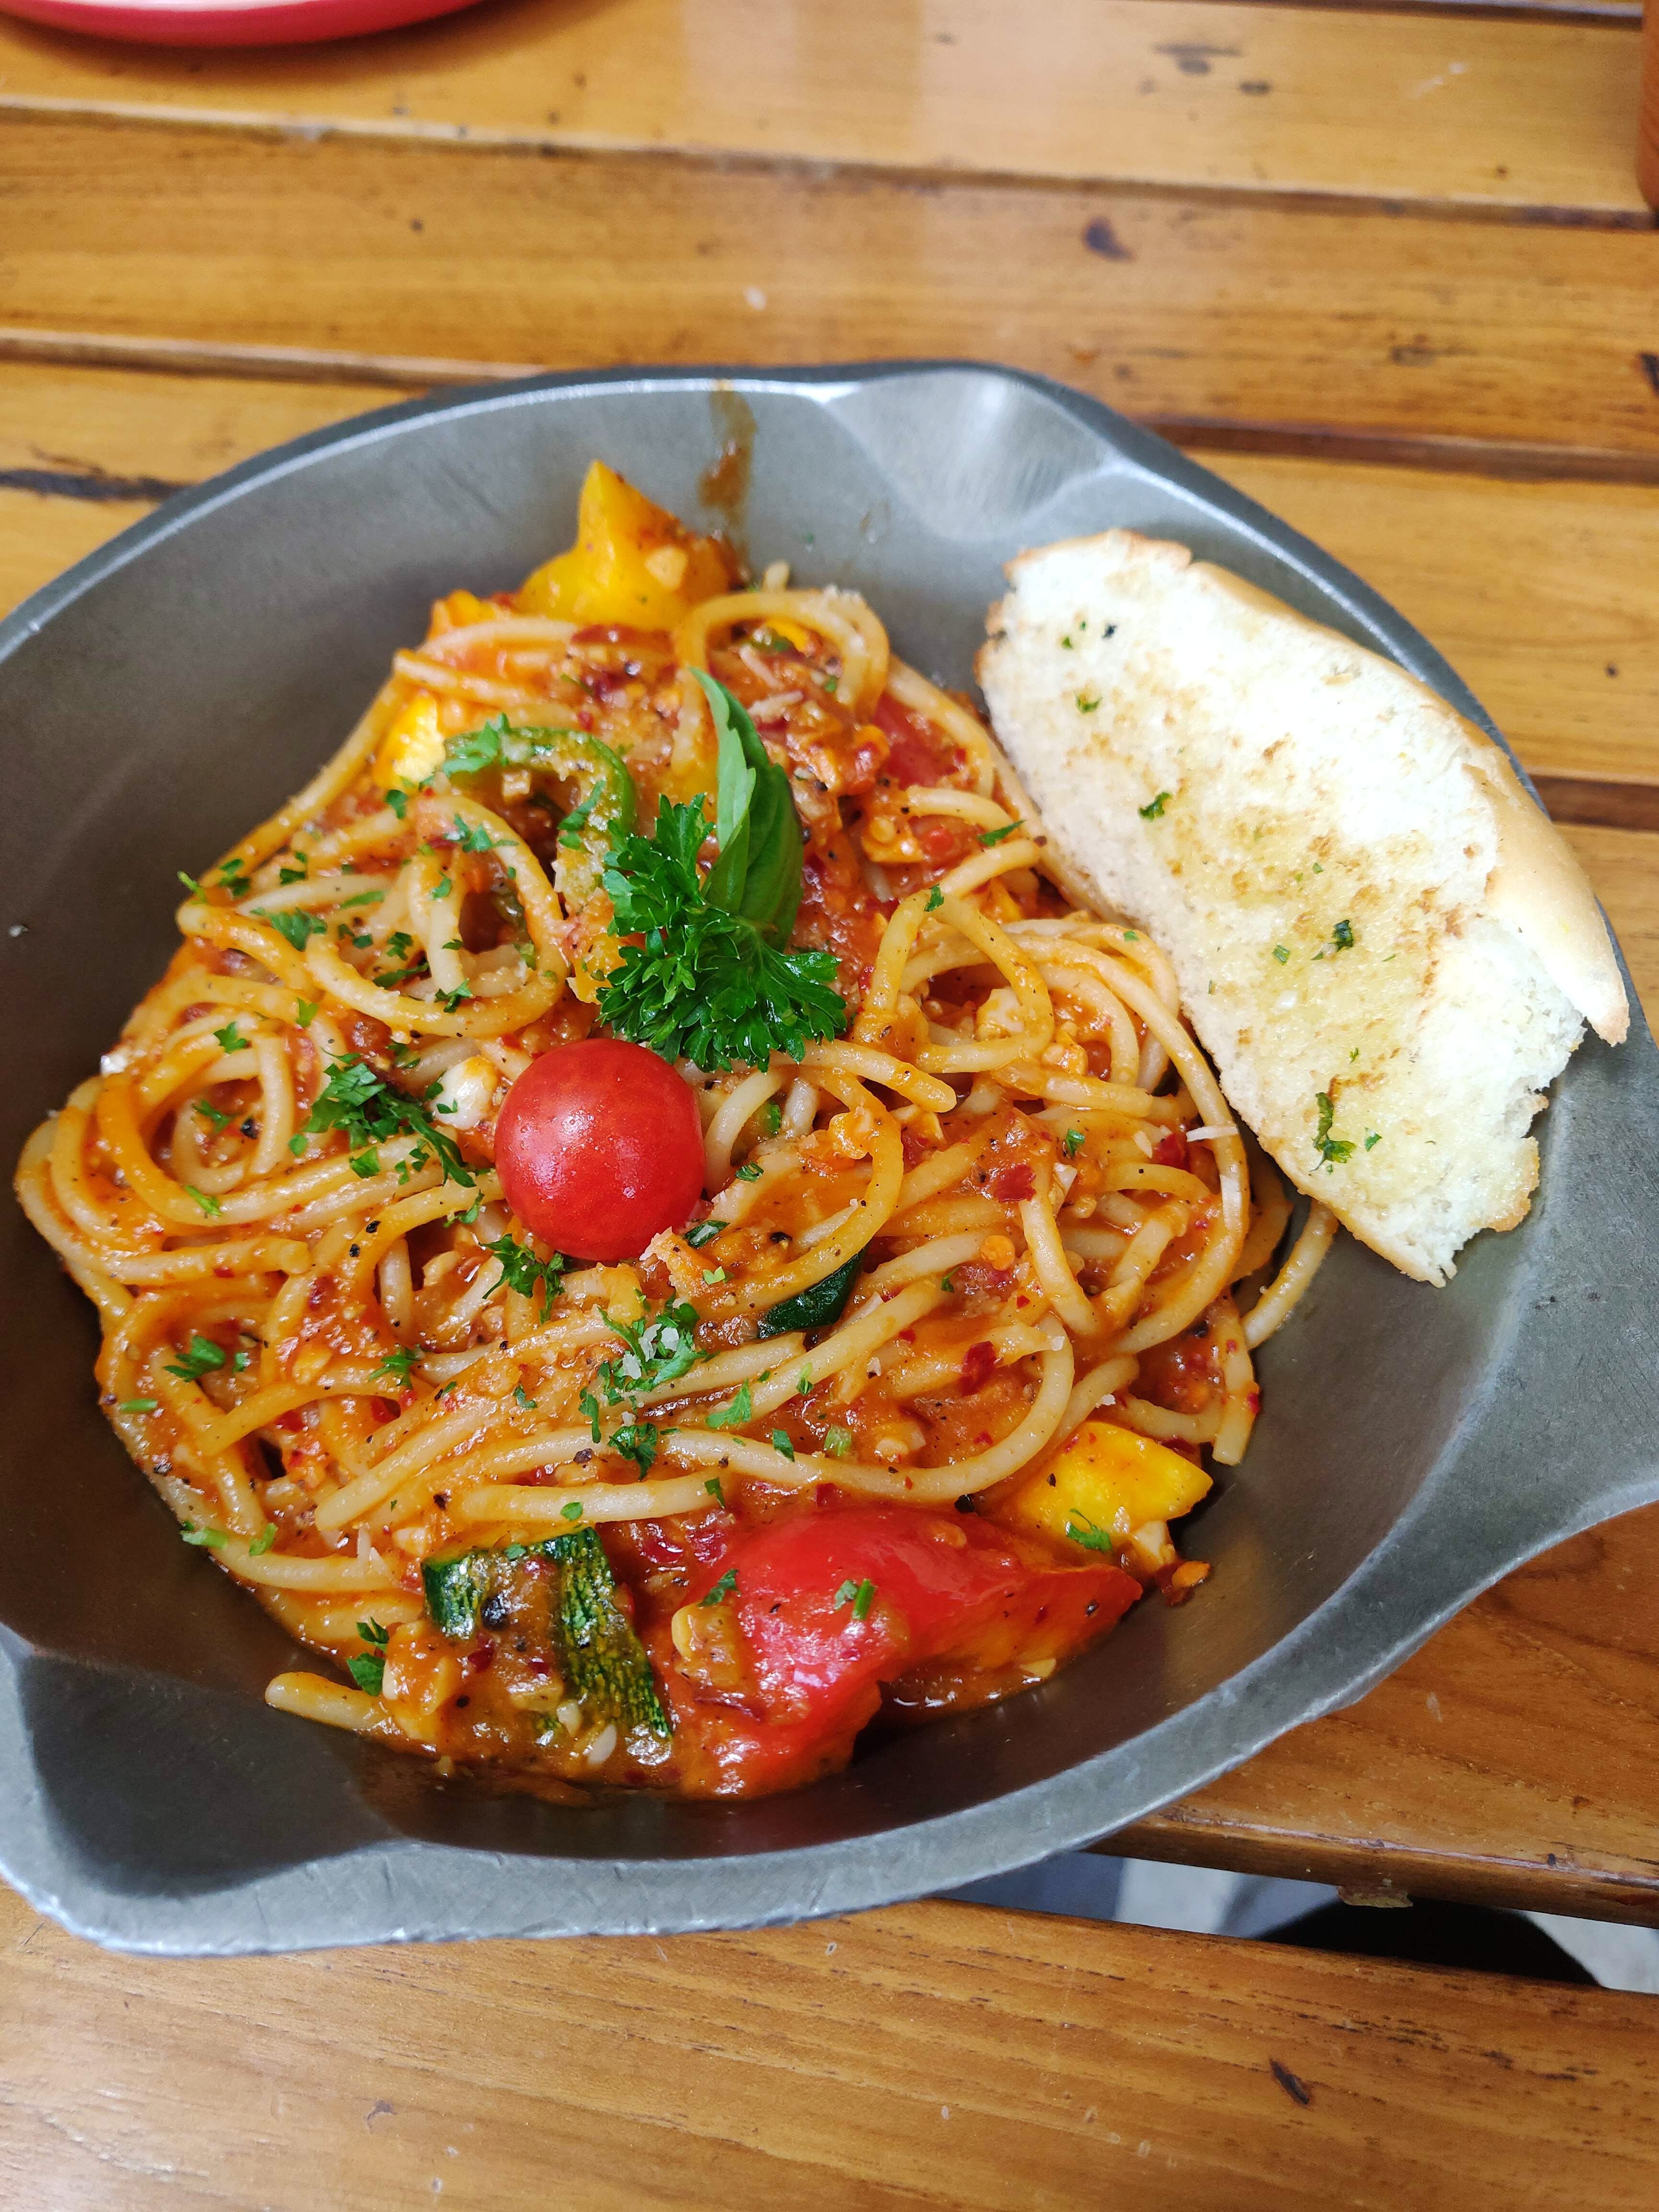 Dish,Food,Cuisine,Ingredient,Capellini,Spaghetti,Spaghetti alla puttanesca,Italian food,Produce,Recipe